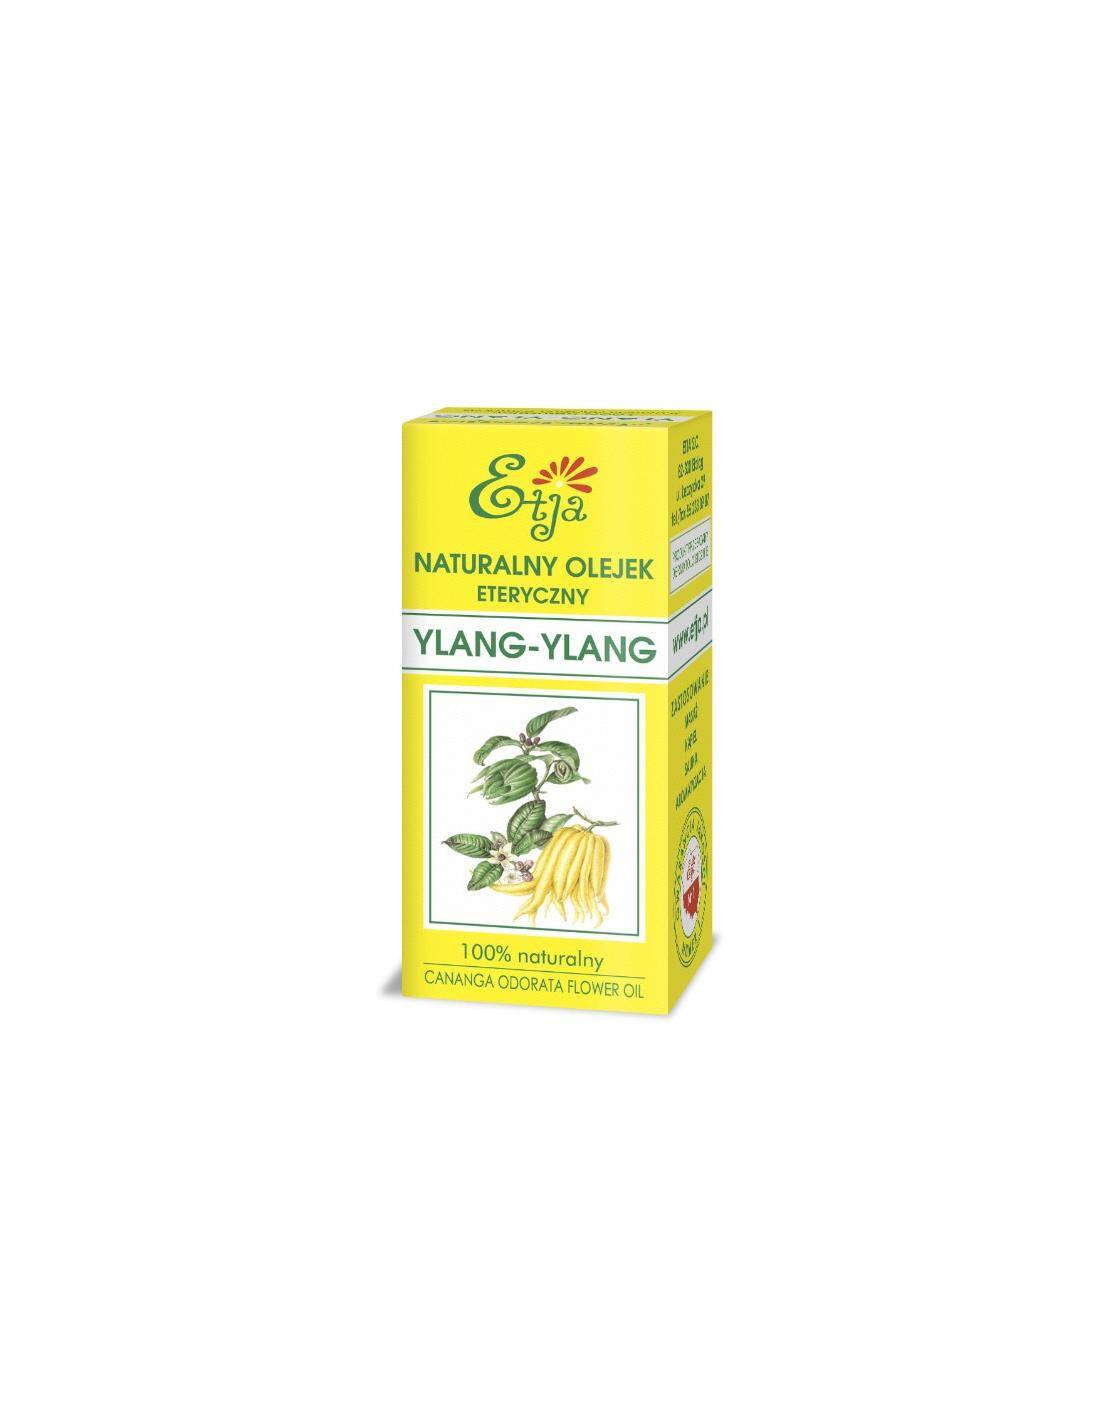 Naturalny olejek eteryczny Ylang-Ylang